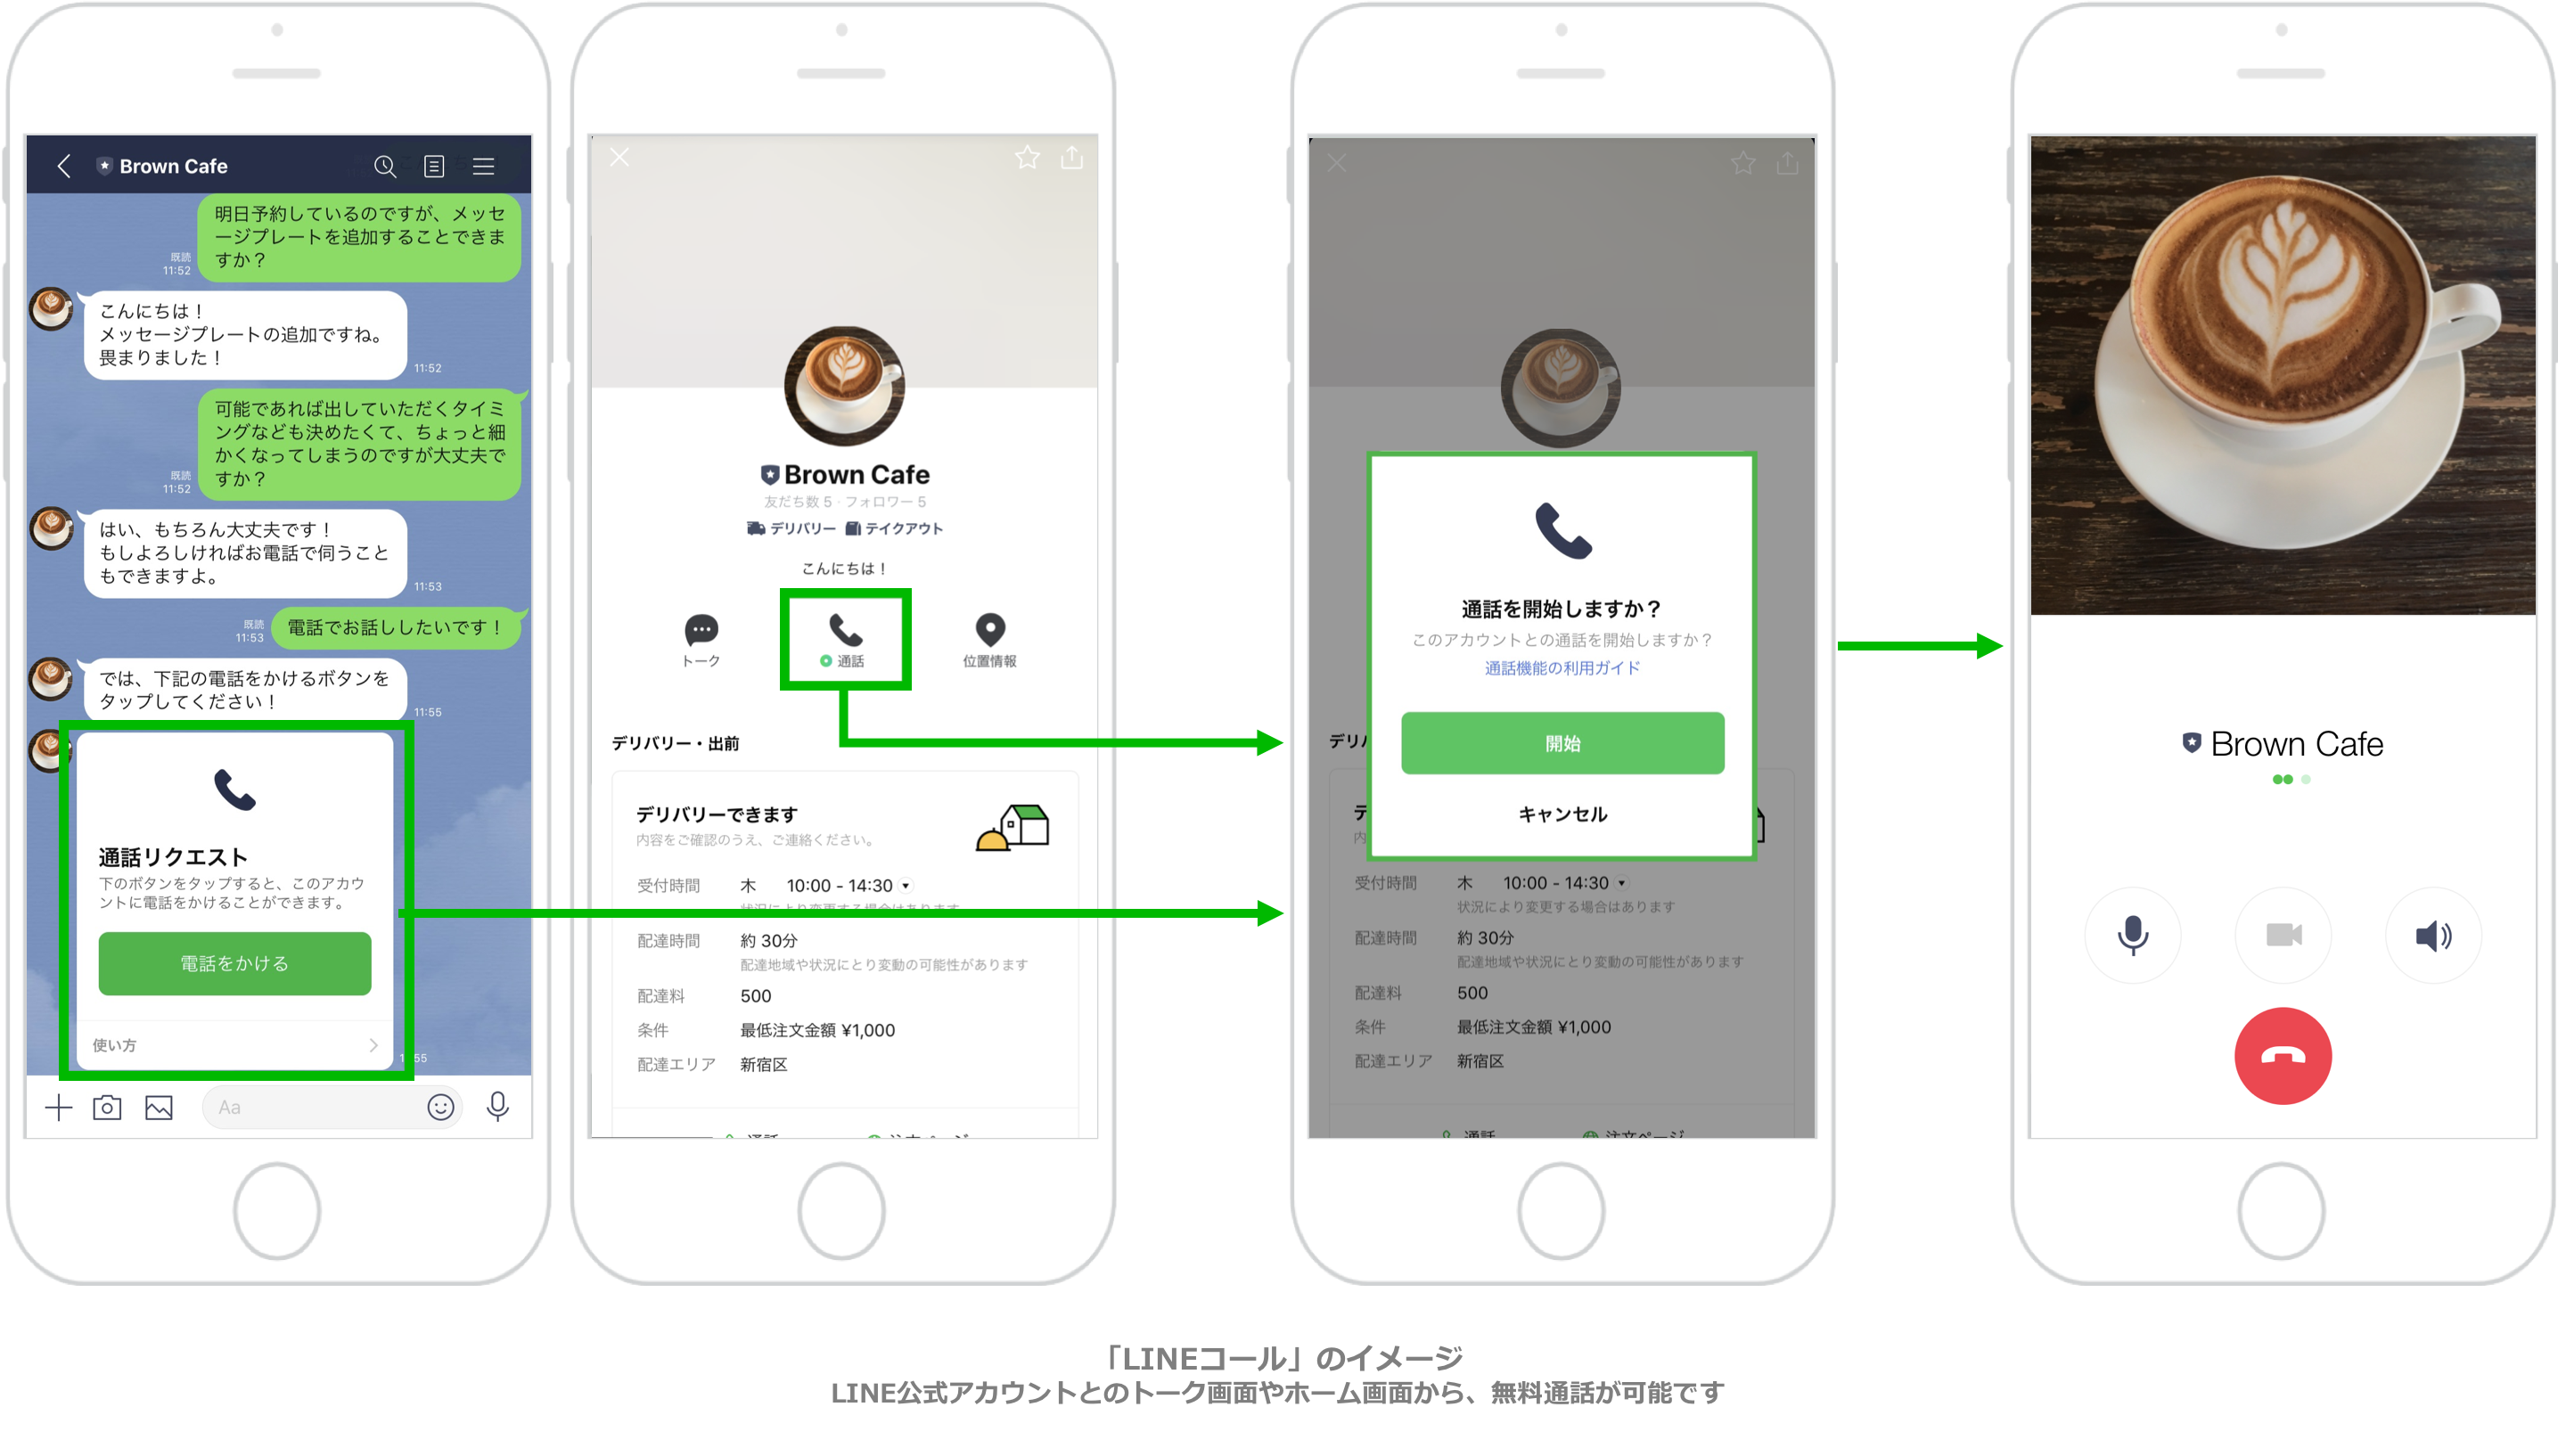 Line公式アカウントと通話ができる Lineコール の提供を開始ユーザー同士の通話と同じ感覚で Line上から無料 通話が可能に Line株式会社のプレスリリース